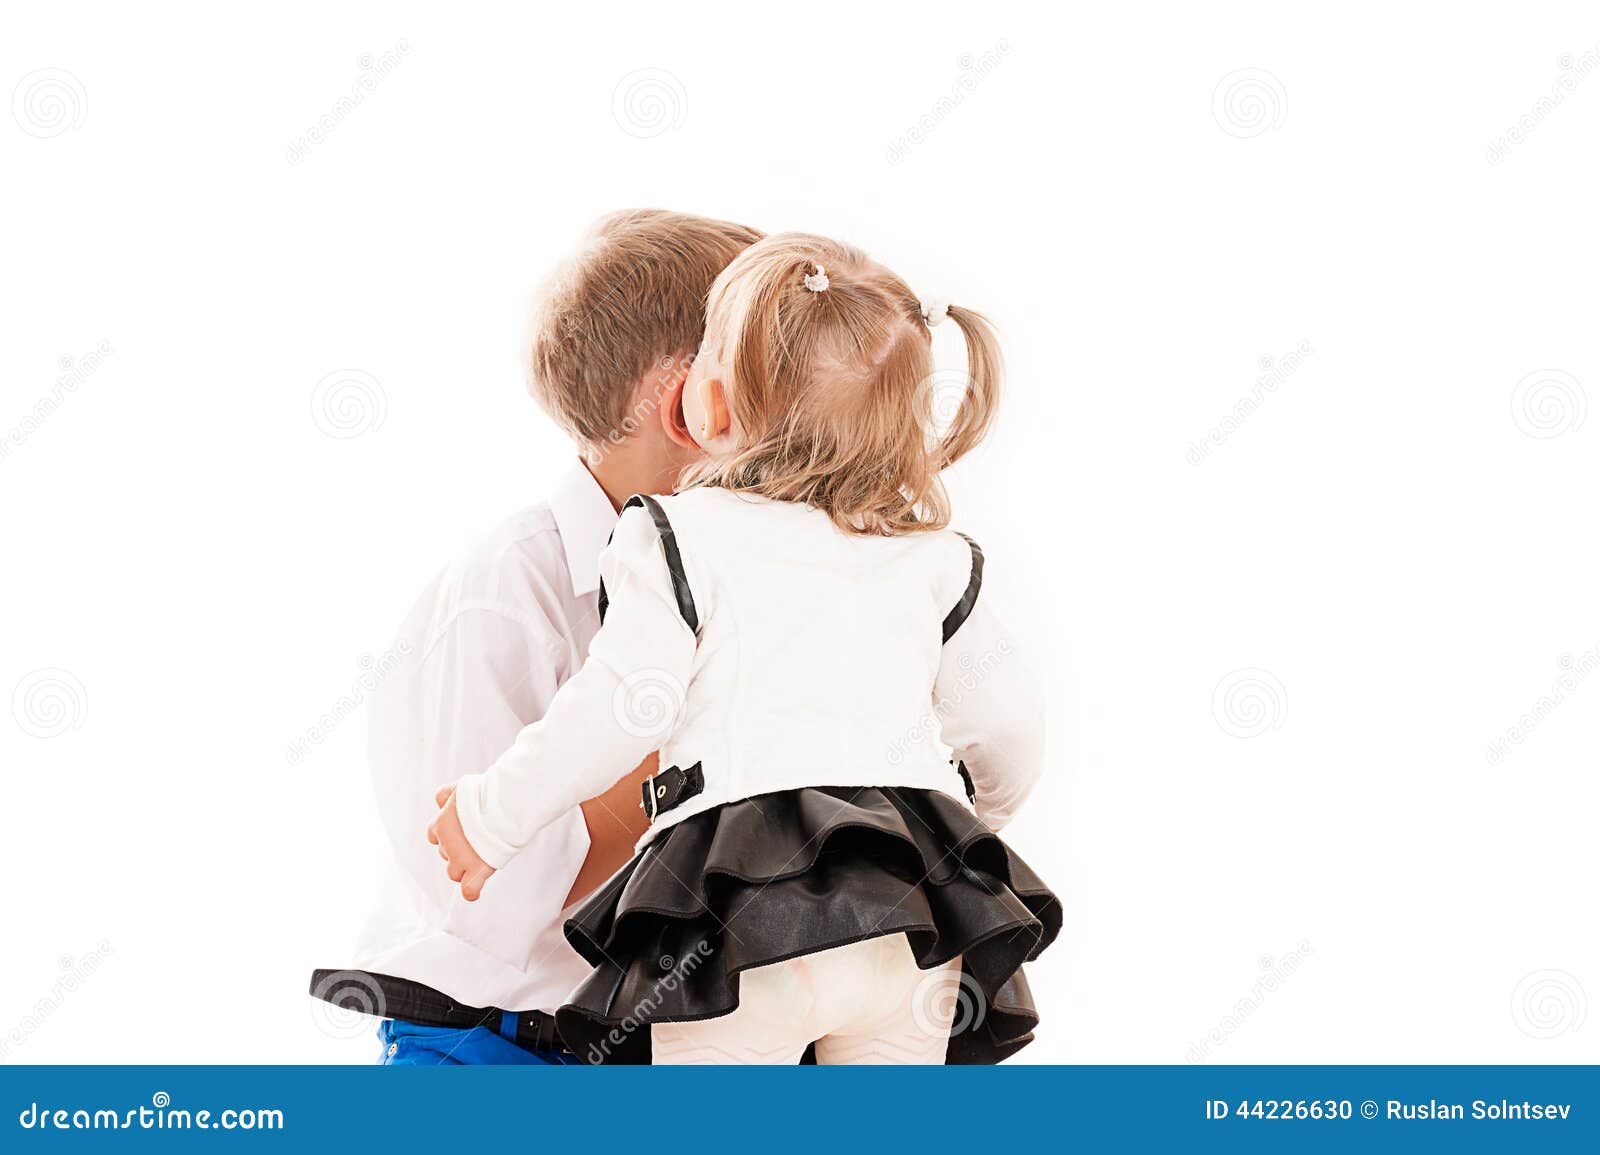 Лизать трусы сестре. Мальчик и девочка маленькие. Мальчик целует мальчика. Мальчик целует девочку за ногу.